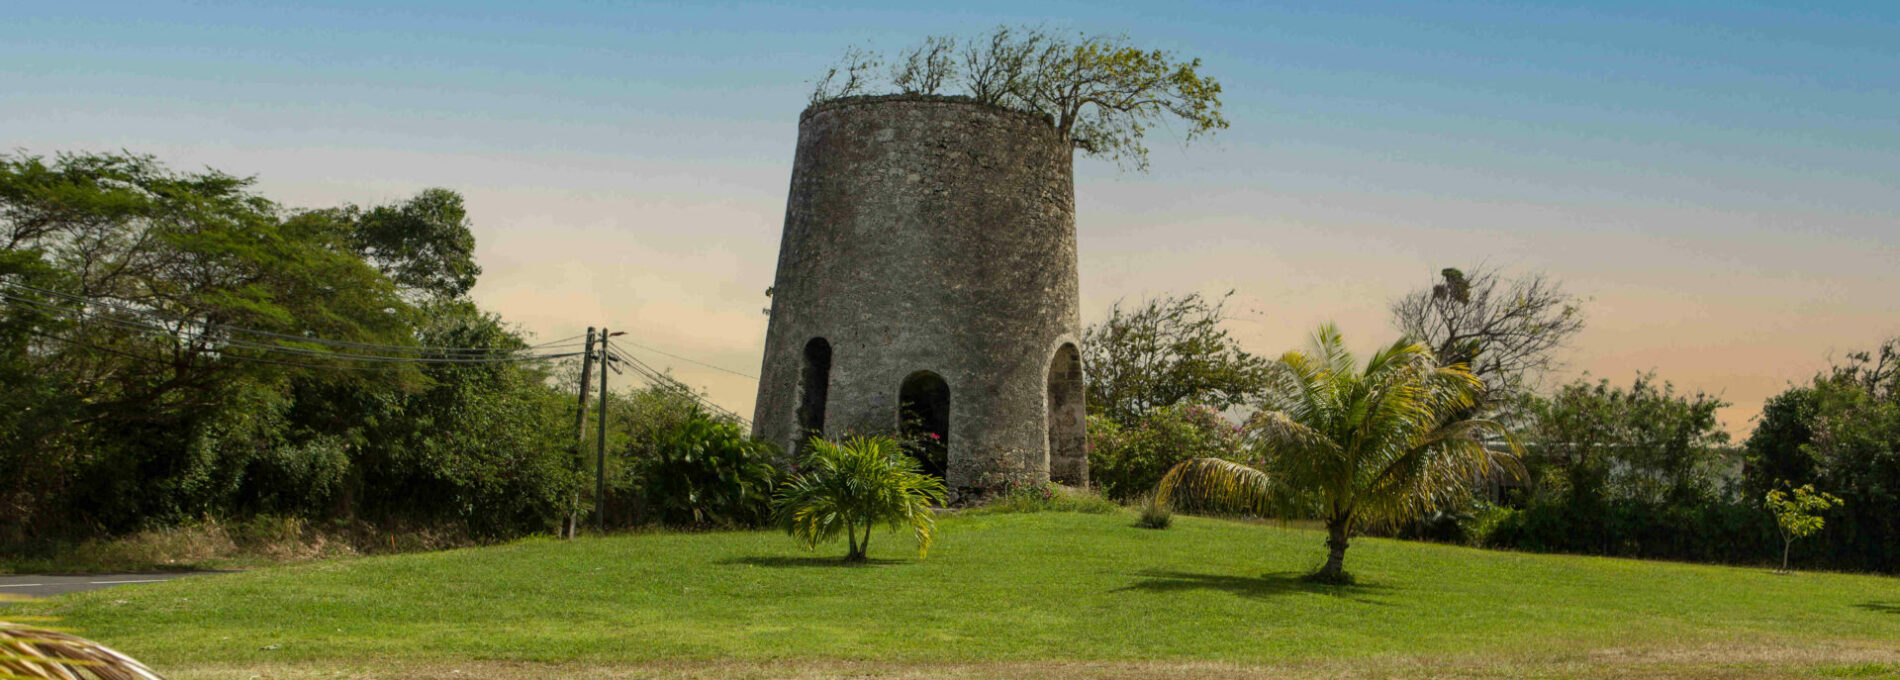 Moulin en Guadeloupe - Anse-Bertrand Le Nord Guadeloupe